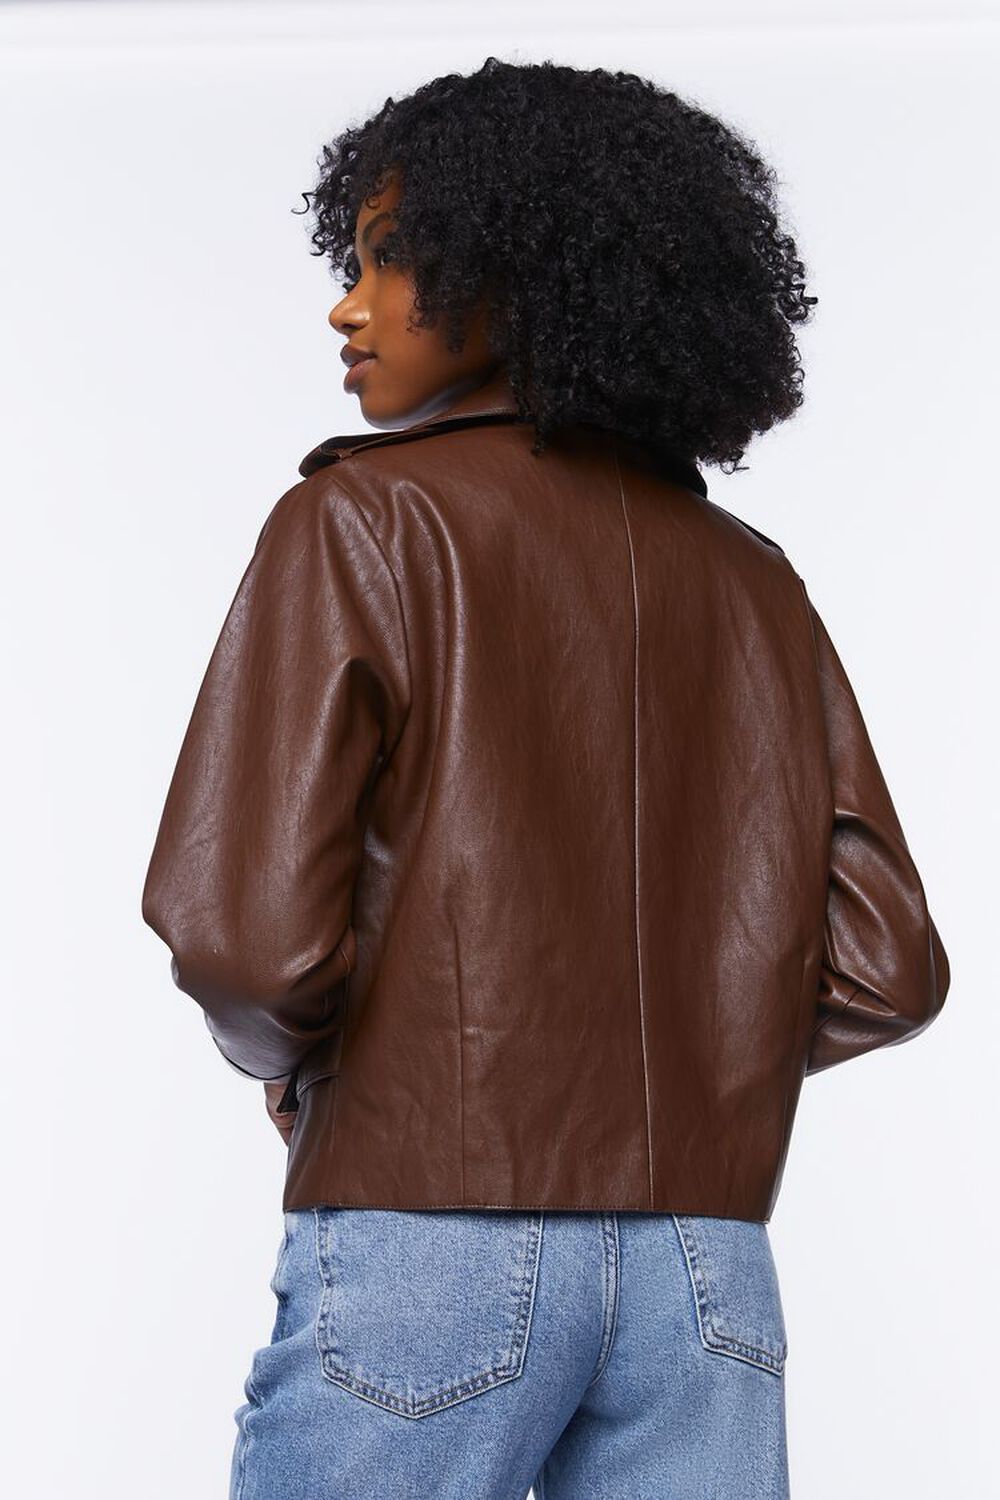 CHOCOLATE Faux Leather Moto Jacket, image 3